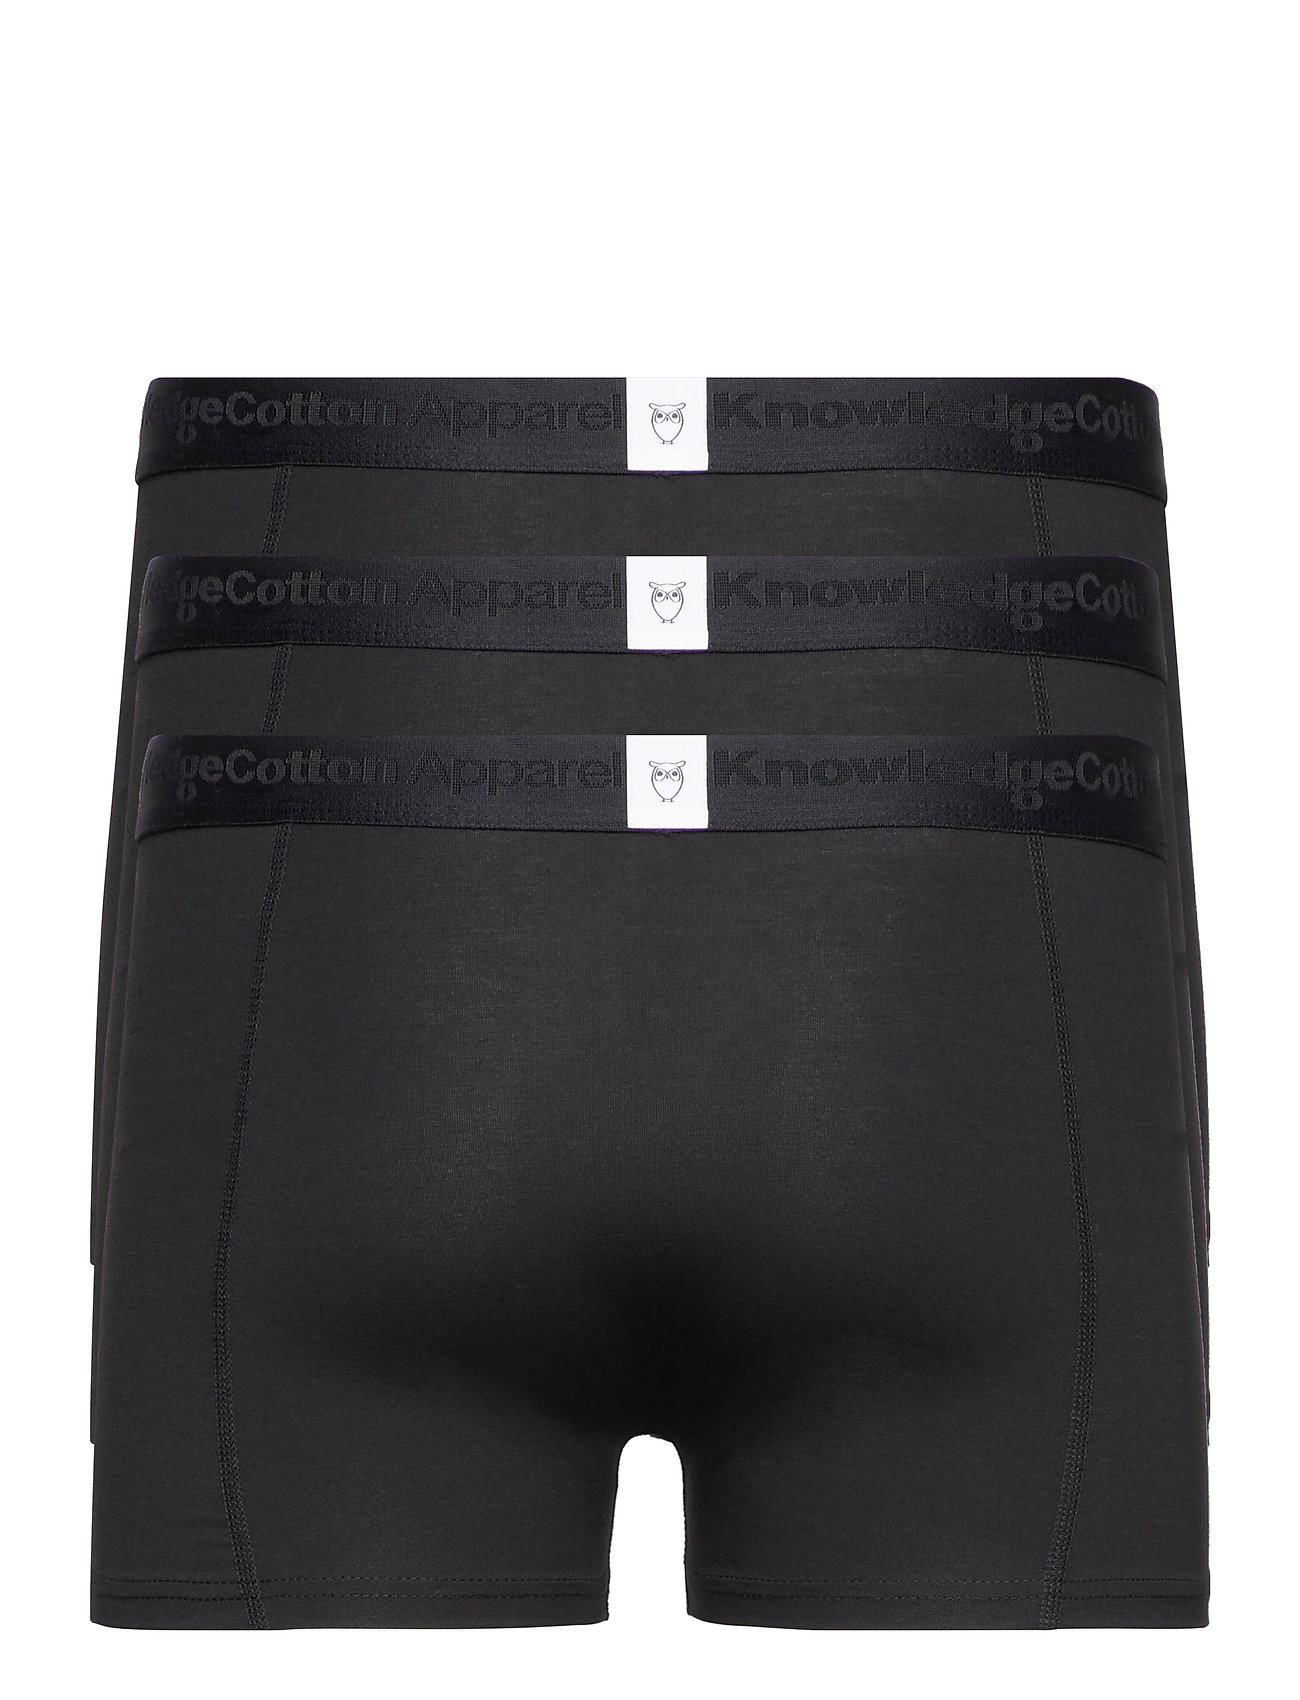 Knowledge Cotton Apparel - 3-pack underwear - GOTS/Vegan - die niedrigsten preise - black jet - 1